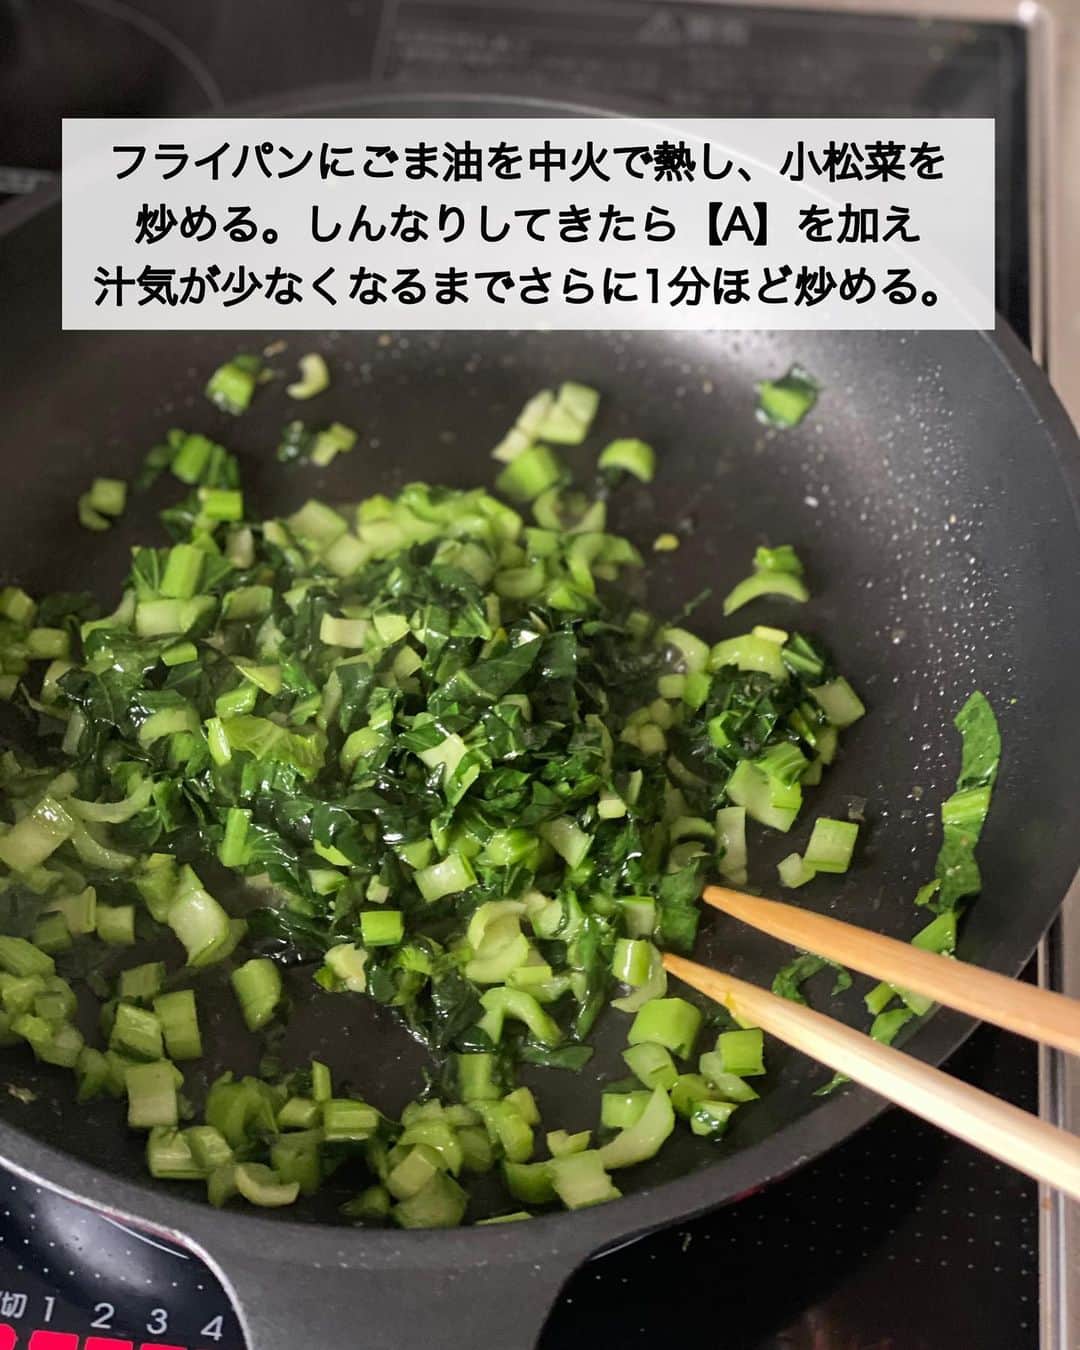 ちおりさんのインスタグラム写真 - (ちおりInstagram)「【小松菜が旨い！簡単混ぜごはん】 ⁡ レシピ色々は→ @chiori.m.m をチェック✅ ⁡ ⁡ ━︎━︎━︎━︎━︎━︎━︎━︎━︎━︎━︎ 胡麻としらすの菜めし ⁡ Nadiaレシピ🆔457028 ━︎━︎━︎━︎━︎━︎━︎━︎━︎━︎━︎ ⁡ ⁡ こんばんは(^ ^) ⁡ 今日は、小松菜のシャキシャキ感に しらすとごまの風味がやみつきになる 簡単混ぜごはんレシピです🥬 ⁡ 味付けはとってもシンプル。 小松菜も食べやすく 素材の味が引き立ちます✨ ⁡ ⁡ もち麦ご飯で作ると更に美味しいです😊 粉チーズをかけても合うので お好みでお試しください^ ^ ⁡ ⁡ ━︎━︎━︎━︎━︎━︎━︎━︎━︎━︎━︎━︎━︎━︎━︎━︎━︎━︎━︎━︎ ⁡ ⁡ ✍︎ ✍︎recipe ✍︎ ✍︎ ⁡ ⁡ 👩‍🌾【材料】2人分 •あたたかいご飯……350g •小松菜……1/2袋（約120g） •しらす干し（または釜揚げしらす）……40g〜 •ごま油……小さじ2 Aみりん……小さじ2 A和風だしの素……小さじ1 A酢……小さじ1/2 A砂糖……少々 •炒りごま……大さじ1 •塩……適量 ⁡ ⁡ ⁡ ⁡ 👩‍🍳【作り方】 ①小松菜は細かく切る。 ⁡ ②フライパンにごま油を中火で熱し、小松菜を炒める。しんなりしてきたら【A】を加え汁気が少なくなるまでさらに1分ほど炒める。 ⁡ ③ボウルにあたたかいご飯、②の小松菜、しらす干し、炒りごまを入れて混ぜ、塩を加えて味を調える。 ⁡ ④器に盛り、お召し上がりください。そのまま食べても、お好みで粉チーズをかけても美味しいです。 ⁡ ⁡ ⁡ ⁡ ⁡ 📝【POINT】 •もち麦ごはんで作っても美味しいです。 ⁡ •しらすはお好みで量を増やしてください。 釜揚げしらすでもお作りいただけます。 ⁡ ⁡ ⁡ ︎≡︎≡︎≡︎≡︎≡︎≡︎≡︎≡︎≡︎≡︎≡︎≡︎≡︎≡︎≡︎≡︎≡︎≡︎≡︎≡︎≡︎≡︎≡︎≡︎≡︎≡︎≡︎≡︎≡︎≡︎≡︎≡︎≡︎ 【✅新刊レシピ本のお知らせ】 📕ちおり流くり返し作りたいおかず 🙇🏻‍♀️おかげ様で書籍累計10万部を突破しました。 ⁡ ⁡ 全国の書店、Amazon、楽天ブックス 宝島チャンネルにて発売中です。 ⁡ ➤ ➤ ➤ @chiori.m.m のストーリーハイライト。 プロフィールのリンクからご覧いただけます😊 📗ちおりの簡単絶品おかず１、２ 既刊もぜひご覧いただきたいです。 ⁡ ≡︎≡︎≡︎≡︎≡︎≡︎≡︎≡︎≡︎≡︎≡︎≡︎≡︎≡︎≡︎≡︎≡︎≡︎≡︎≡︎≡︎≡︎≡︎≡︎≡︎≡︎≡︎≡︎≡︎≡︎≡︎≡︎≡︎≡︎ ⁡ ⁡ 最後までご覧いただきありがとうございます😊 皆さんのいいね、コメント、レシピ保存が 日々の励みになっています^ ^ ⁑ ⁑ ⁑ ⁑ ⁑ ⁑ ⁑ ⁑ ⁑ #混ぜごはん #混ぜご飯   #Nadiaレシピ #Nadiaartist  #japanesefood   #食卓 #献立 #簡単ごはん #おうちごはん　 #簡単レシピ #節約レシピ #時短レシピ  #日々の暮らし #作り置きレシピ   #夕飯レシピ #お弁当レシピ #しらす  #料理初心者 #おつまみレシピ #しらすレシピ  #作り置き #小松菜 #小松菜レシピ」4月3日 21時10分 - chiori.m.m